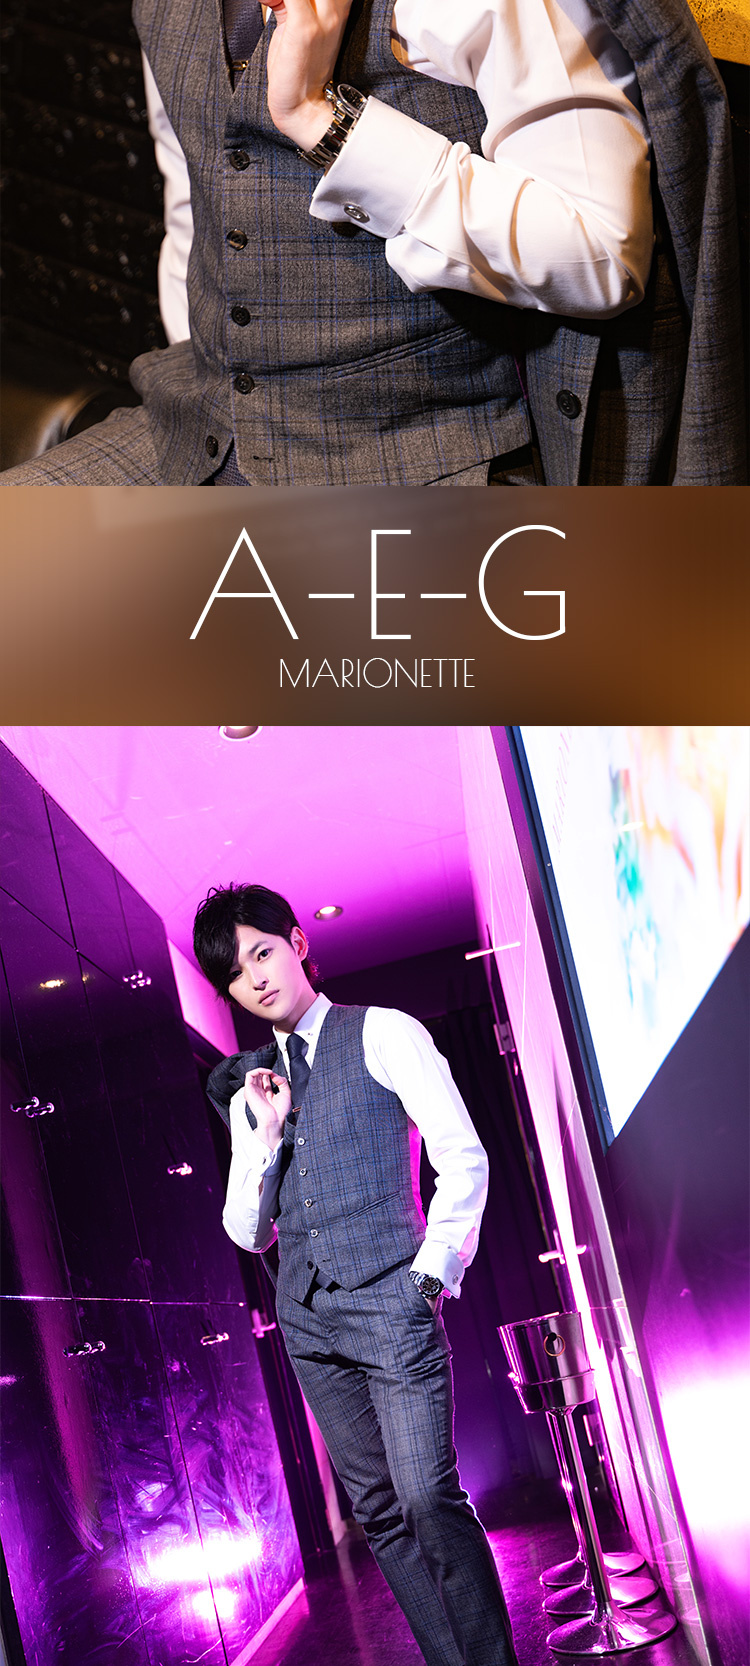 歌舞伎町ホストクラブ MARIONETTE A-E-G